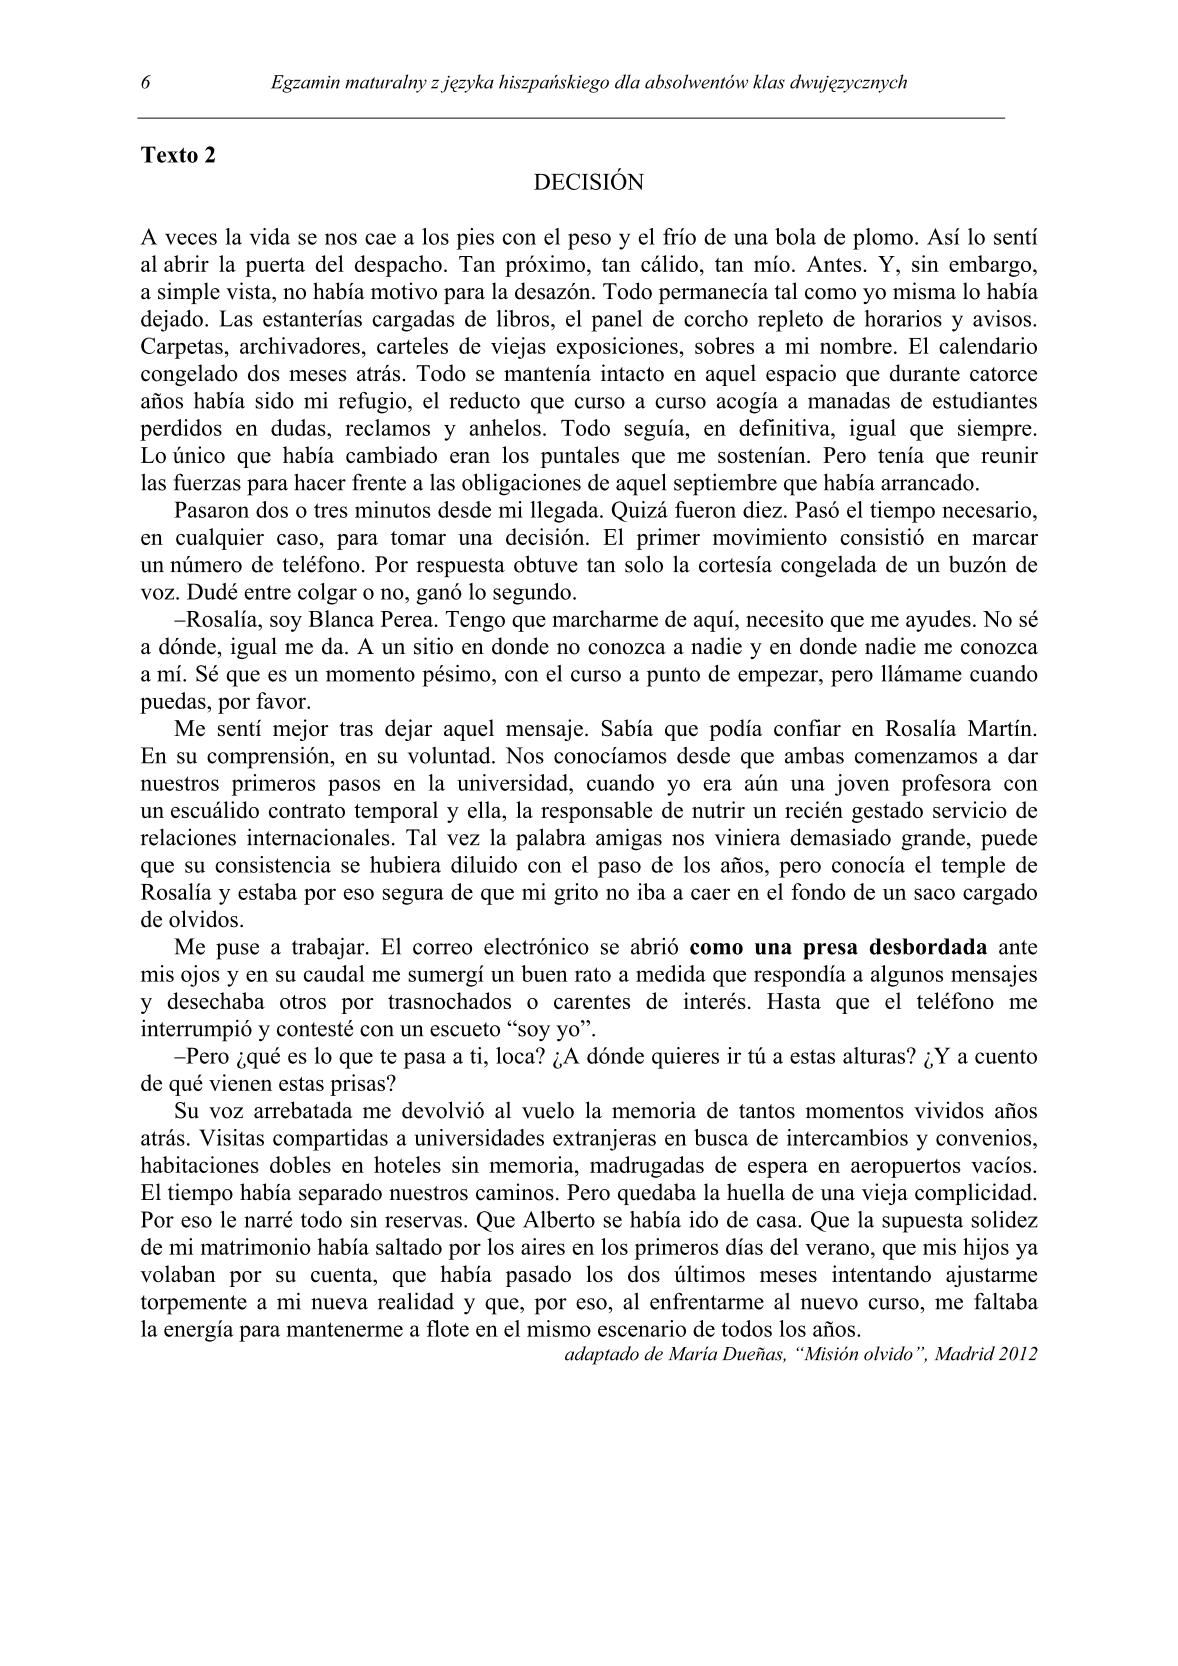 pytania-hiszpanski-dla-absolwentow-klas-dwujezycznych-matura-2014-str.6